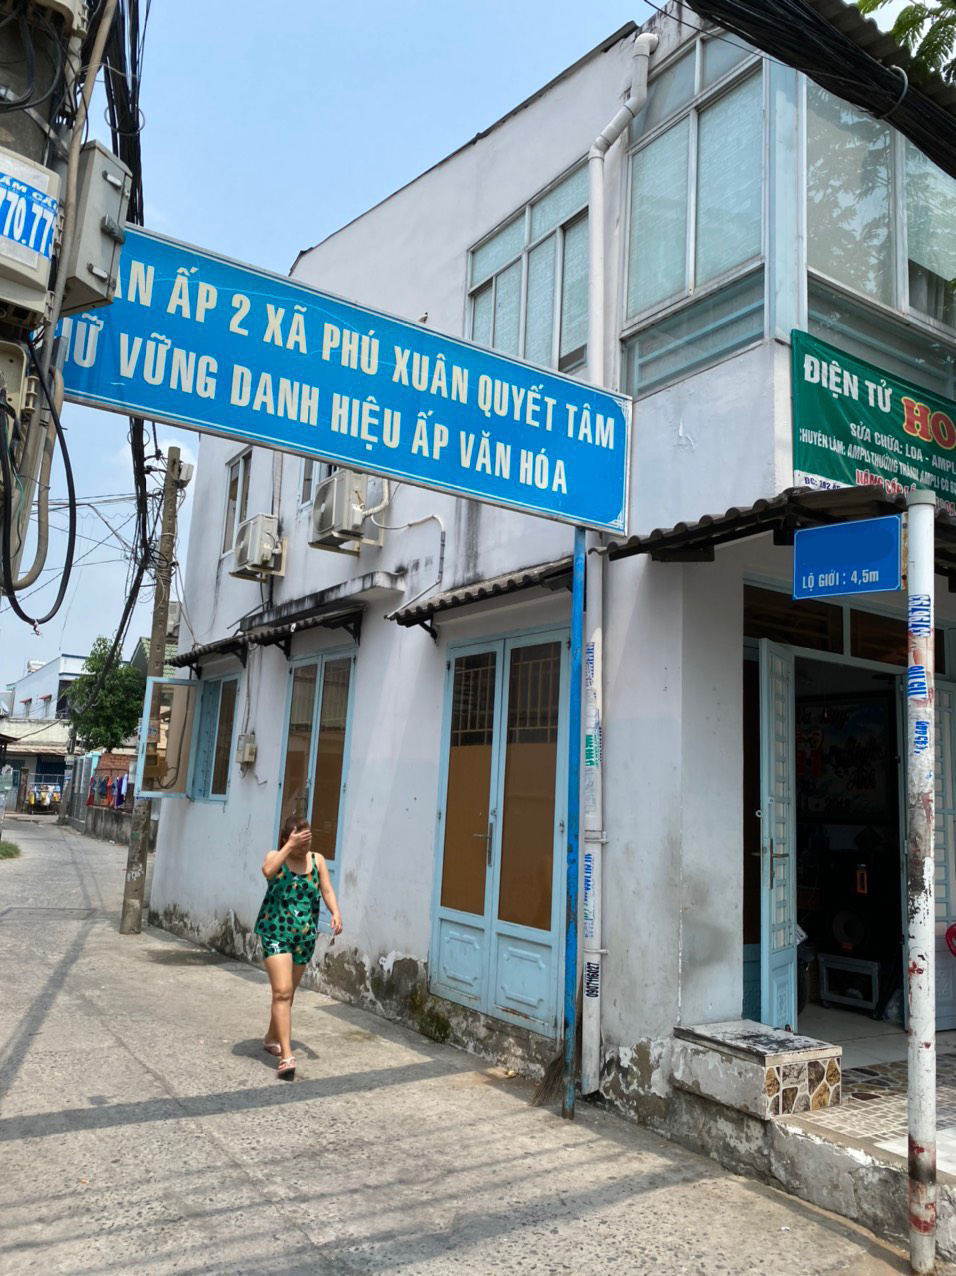 Bán nhà đường Nguyễn Bình xã Phú Xuân huyện Nhà Bè